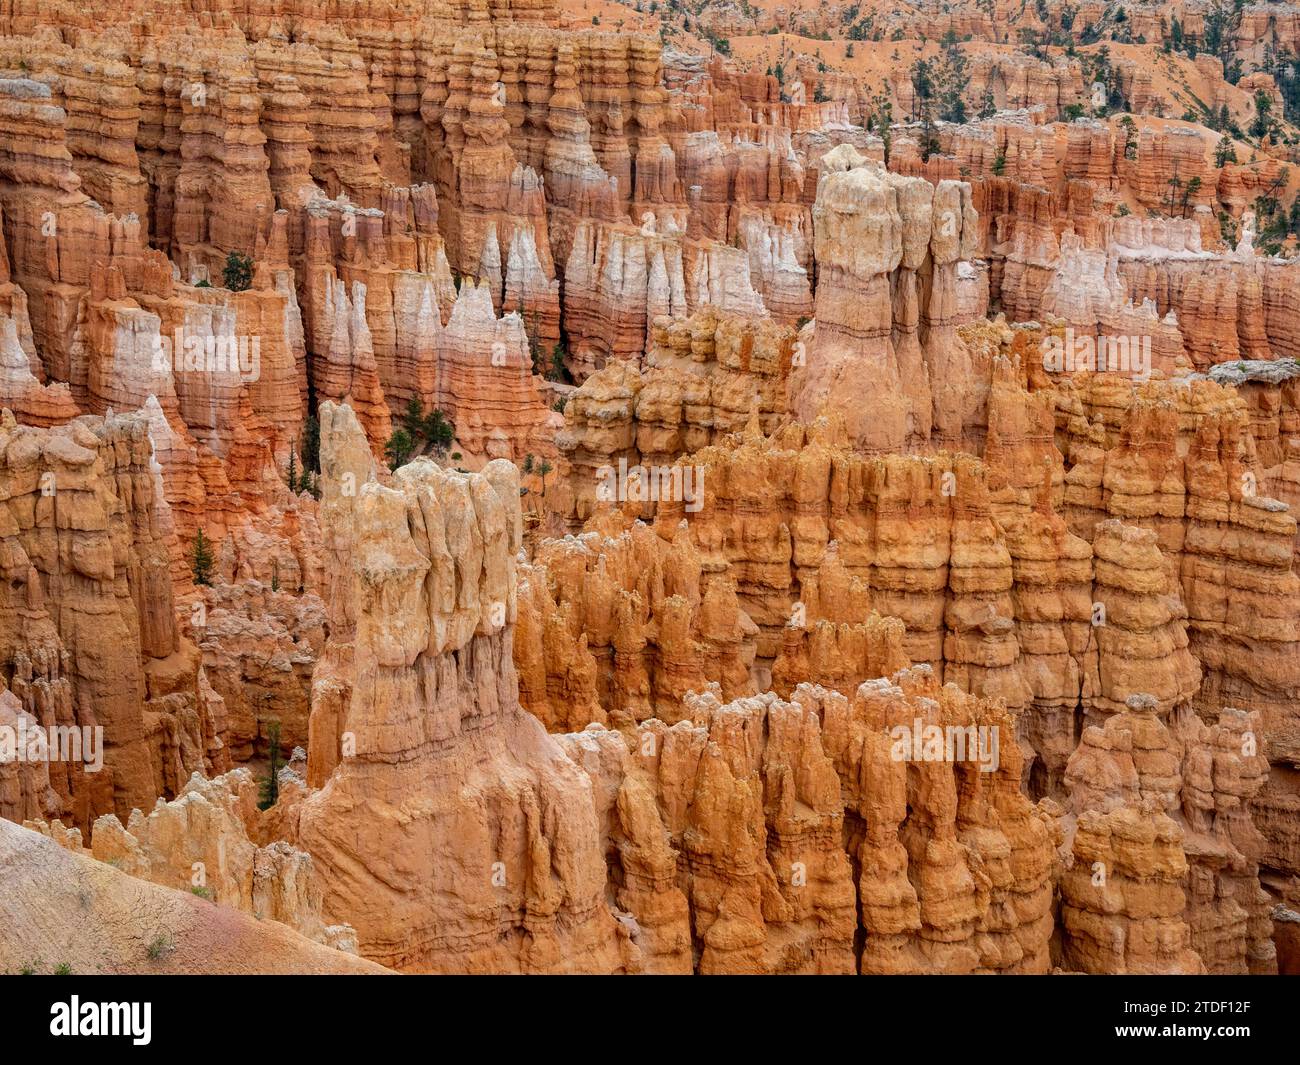 Formations rocheuses rouges connues sous le nom de hoodoos dans le parc national de Bryce Canyon, Utah, États-Unis d'Amérique, Amérique du Nord Banque D'Images